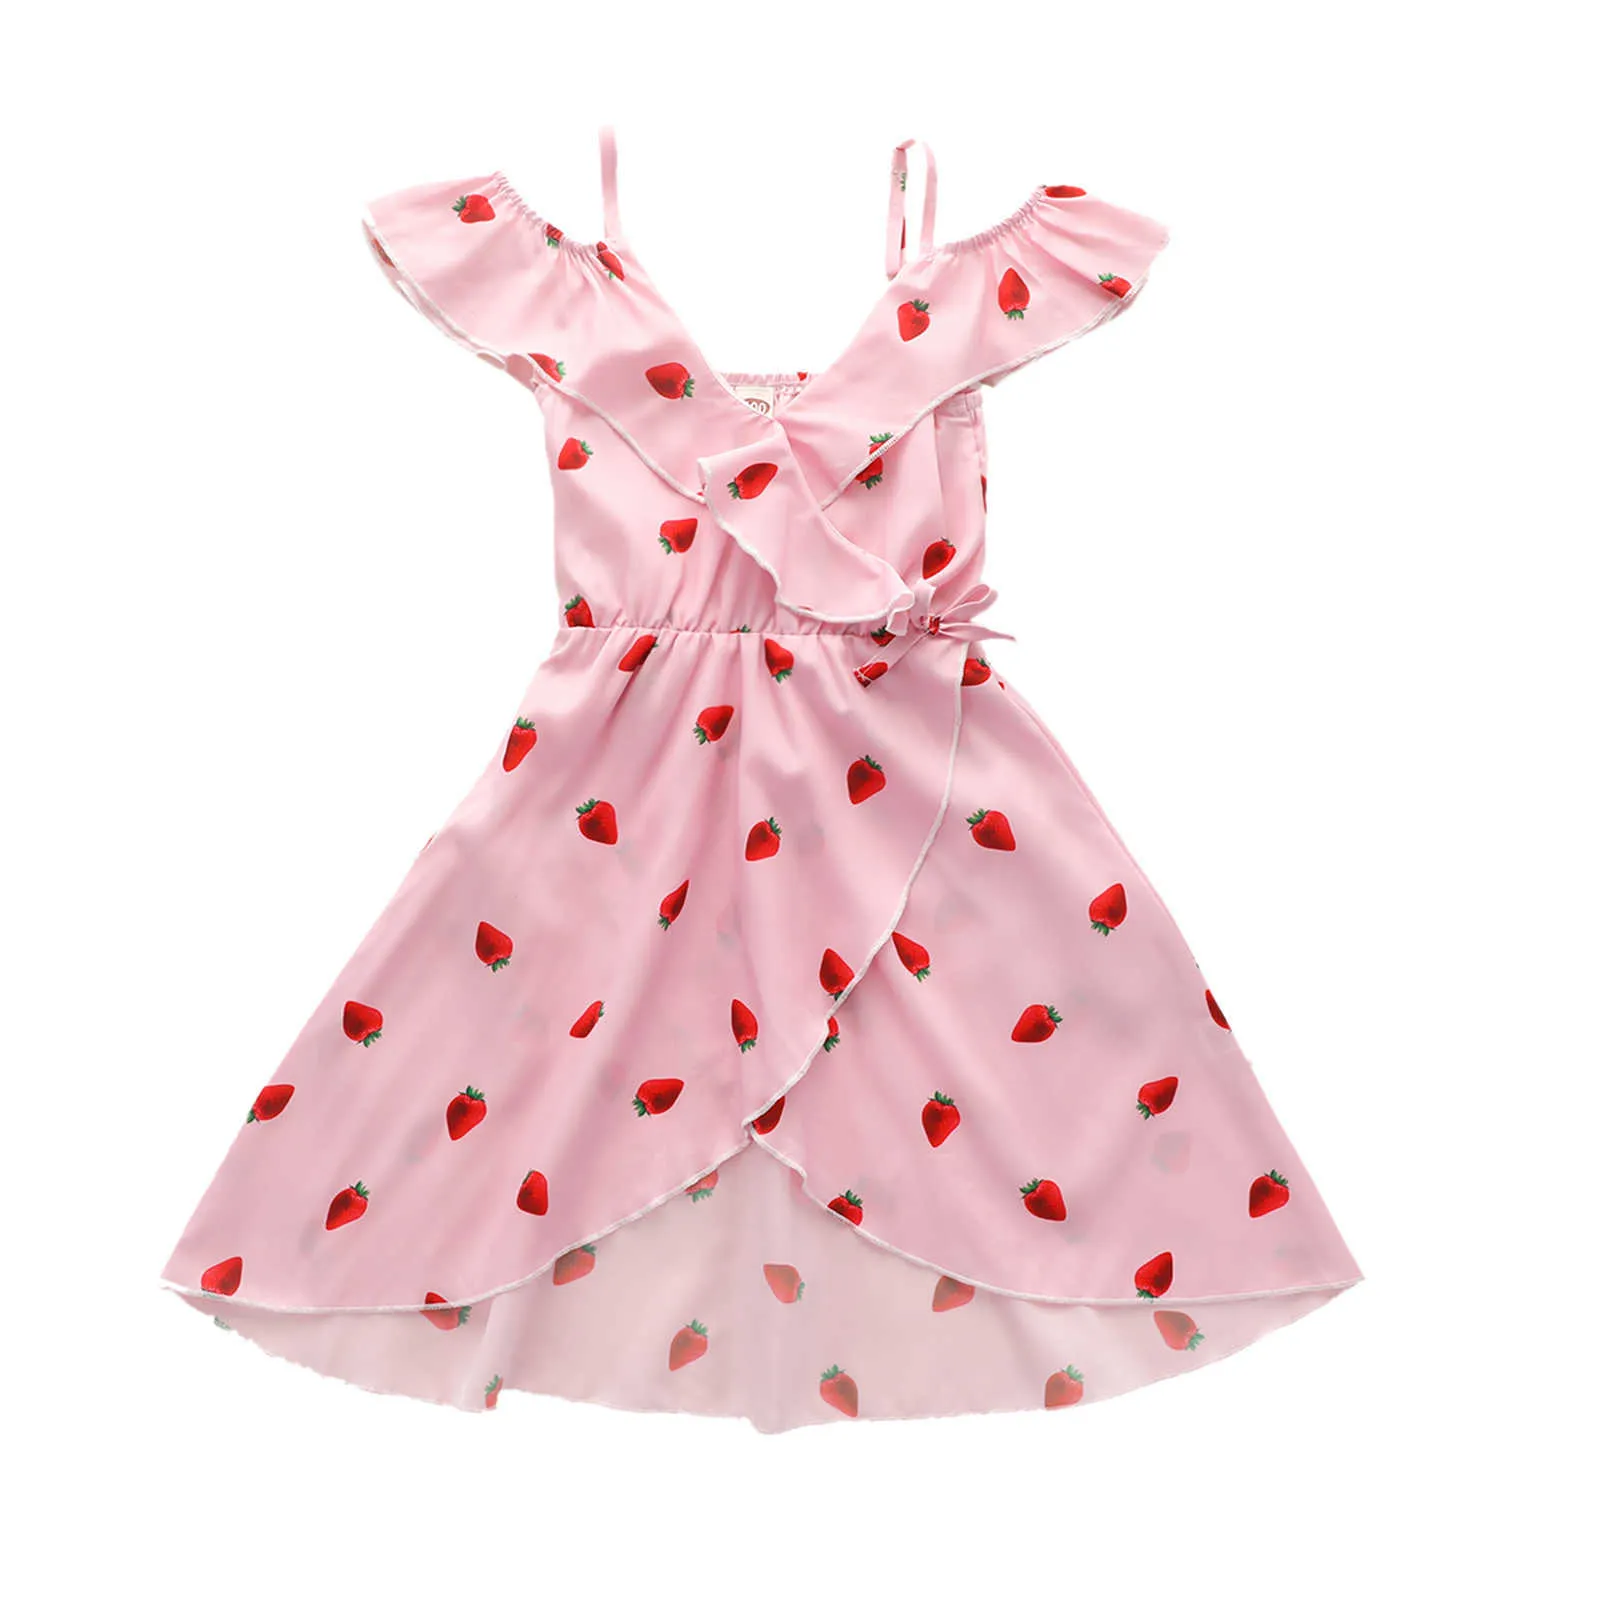 Toddler Baby Girl's Dress, Strawberry Printing Stroje bez rękawów, Casual V-Neck High Paist Odzież One-Pieces 2-7T Q0716